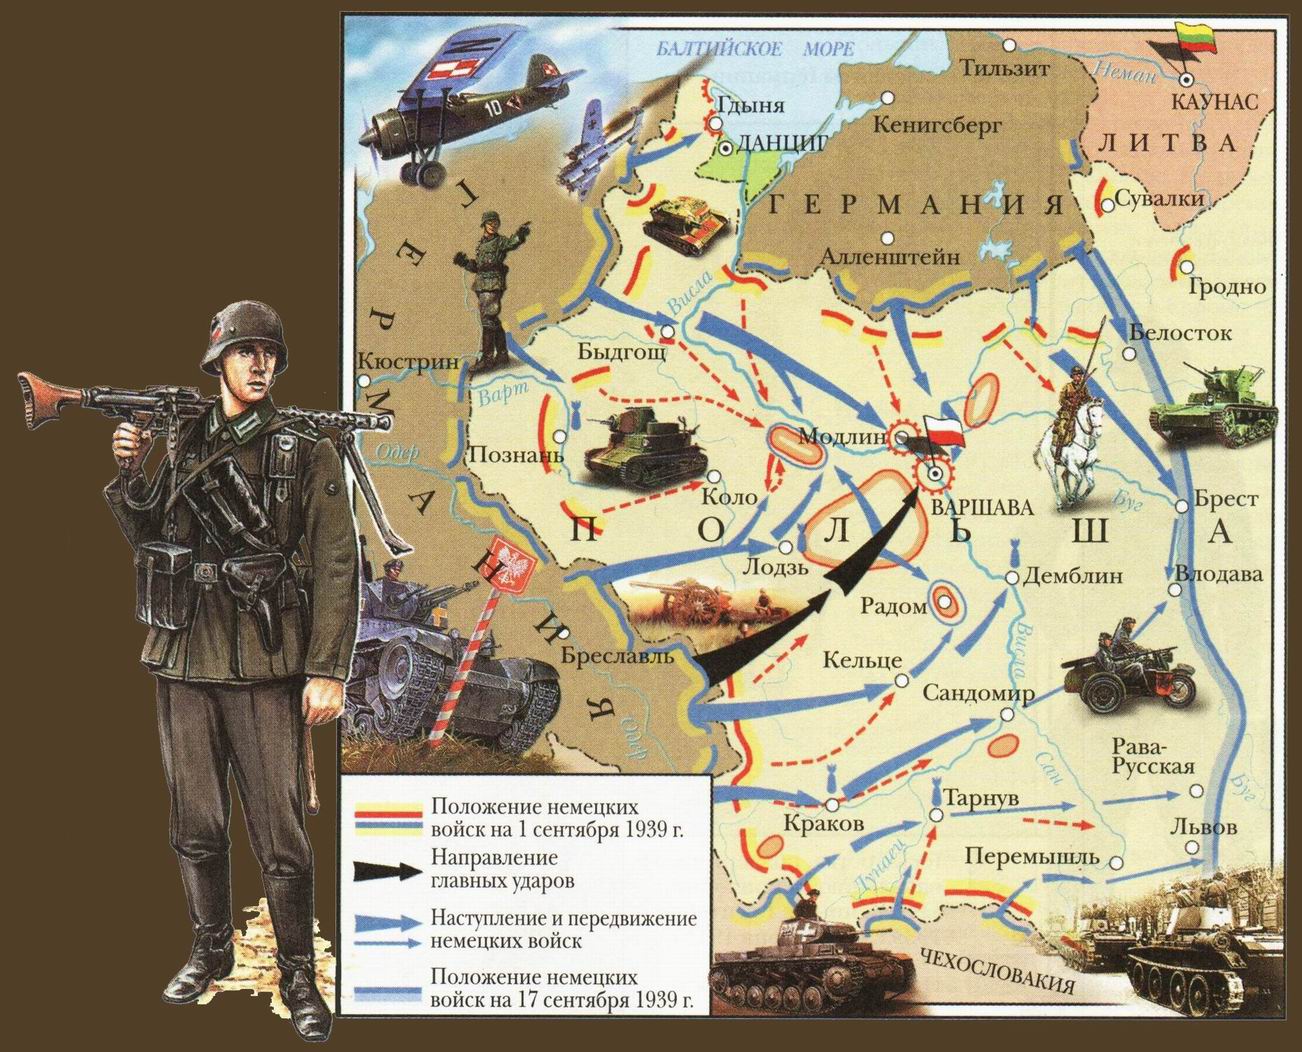 Год нападения. Нападение Германии на Польшу 1 сентября 1939 начало 2 мировой войны. План по захвату Польши Германией. План нападения на Польшу 1939.